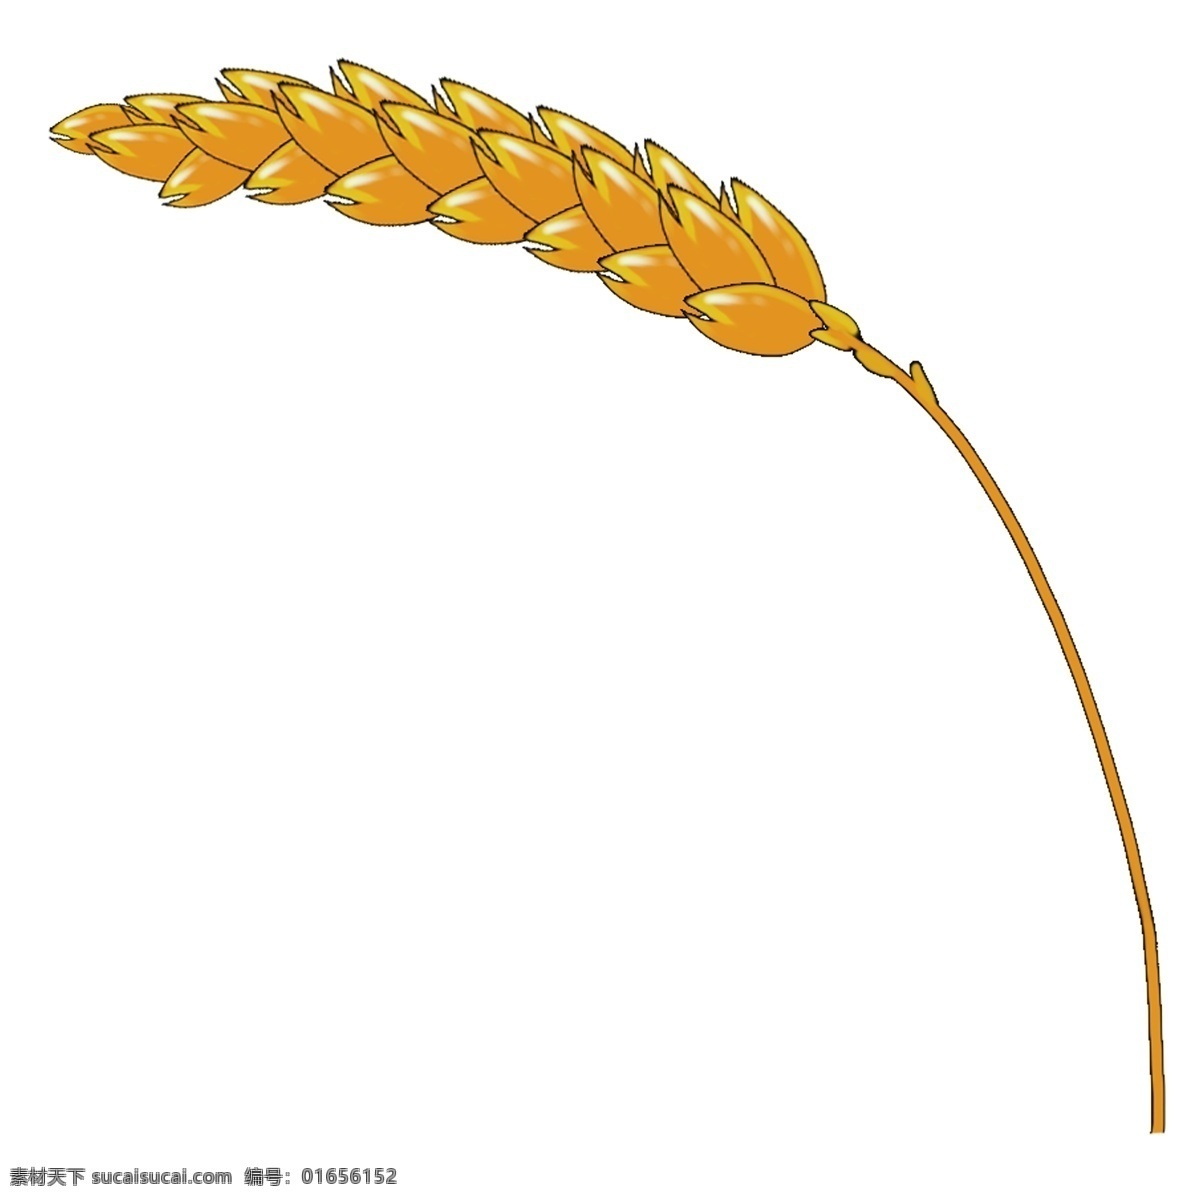 秋天 金黄 麦穗 系列 谷类 大米 五谷杂粮 颗粒成熟 丰收 黄色 收割 好吃 饱满 绿油油的 成长 茂盛